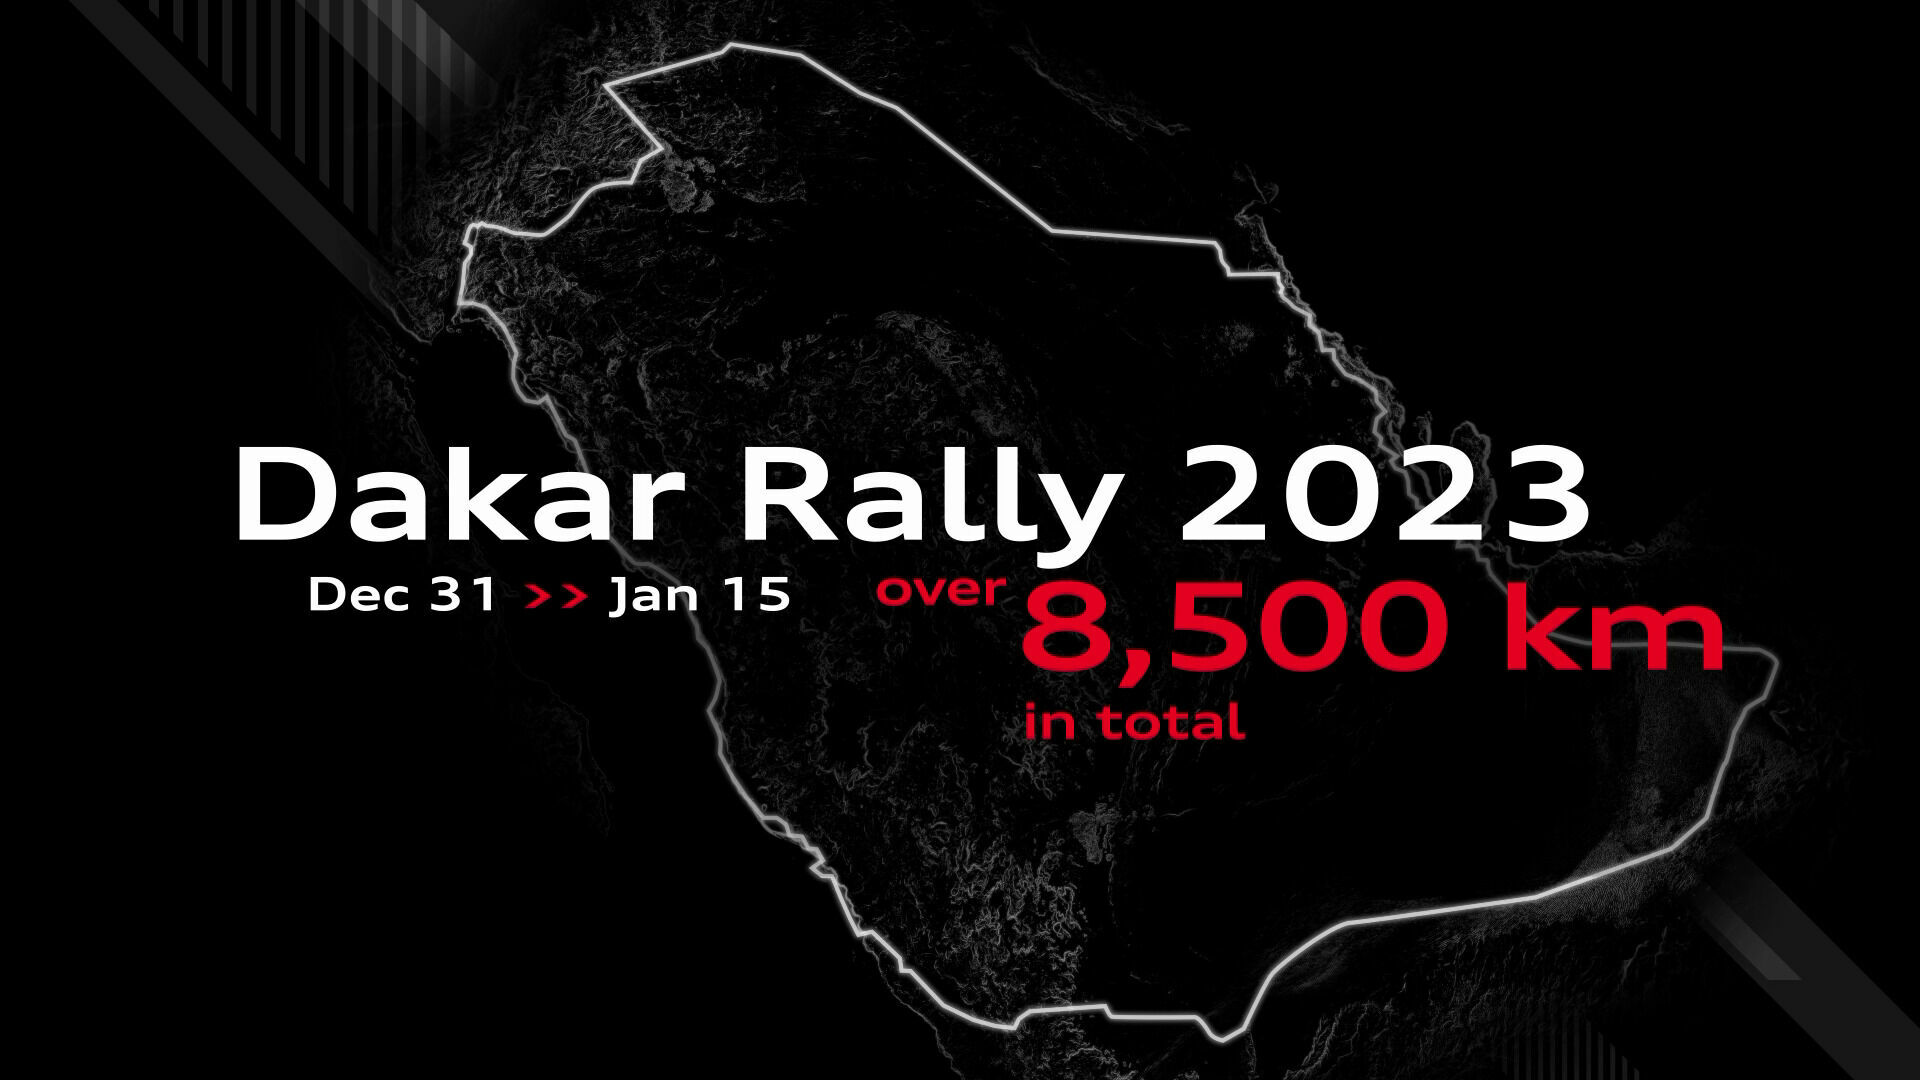 Dakar Rally 2023: Full route